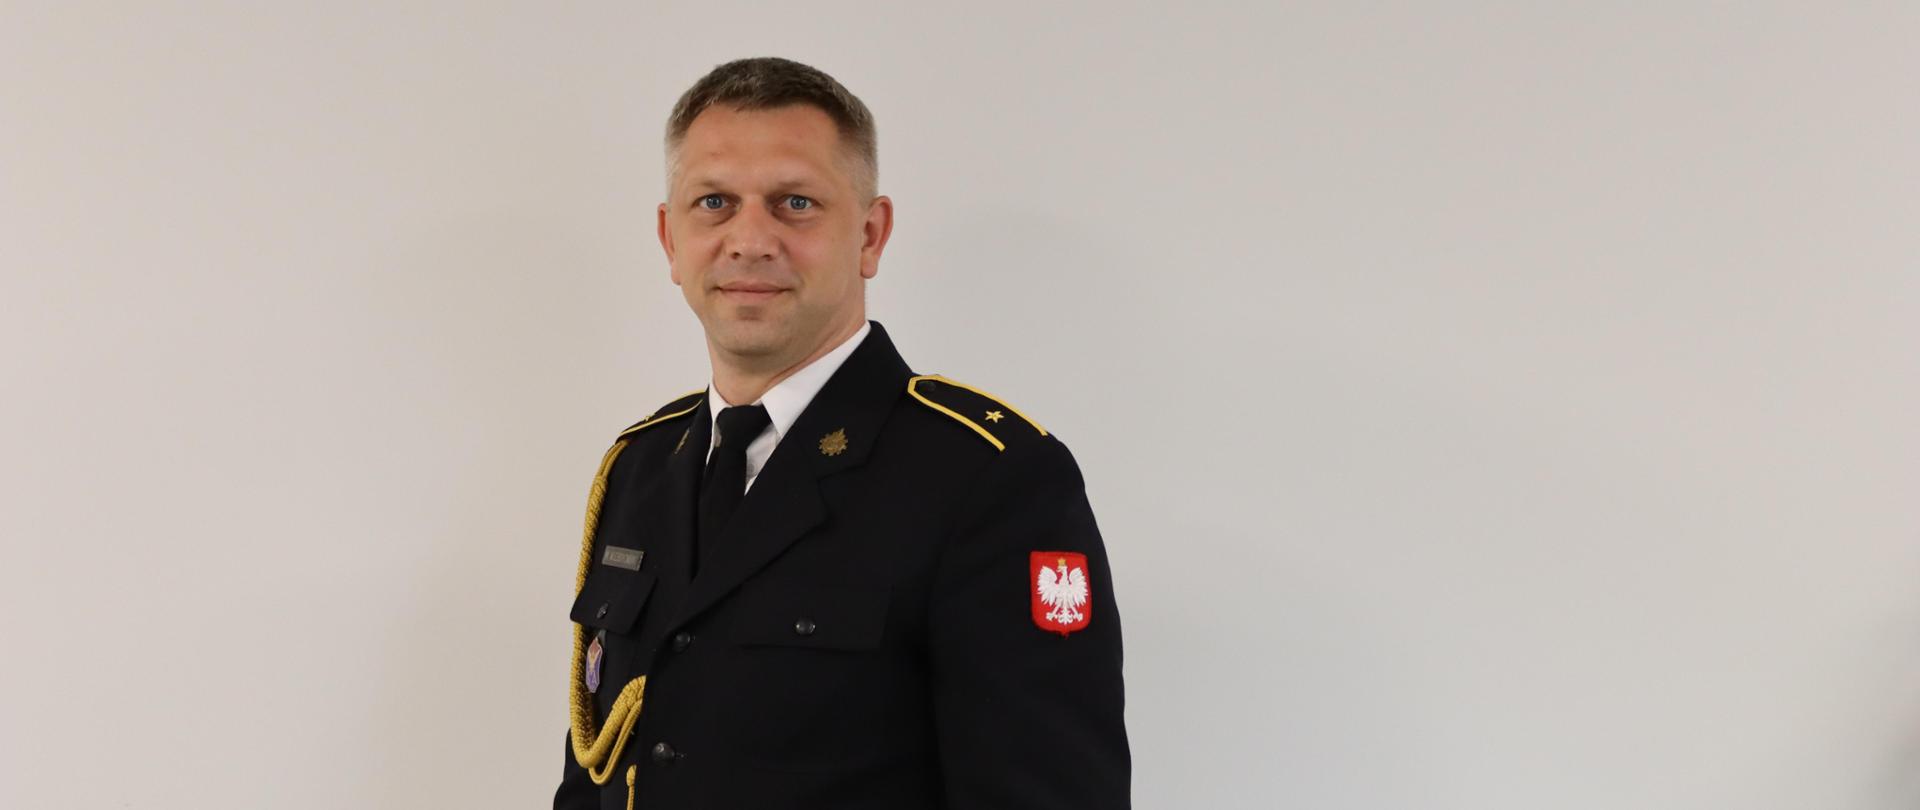 Rzecznik Prasowy Komendanta Powiatowego Państwowej Straży Pożarnej w Złotowie asp. Mateusz Wiebskowski